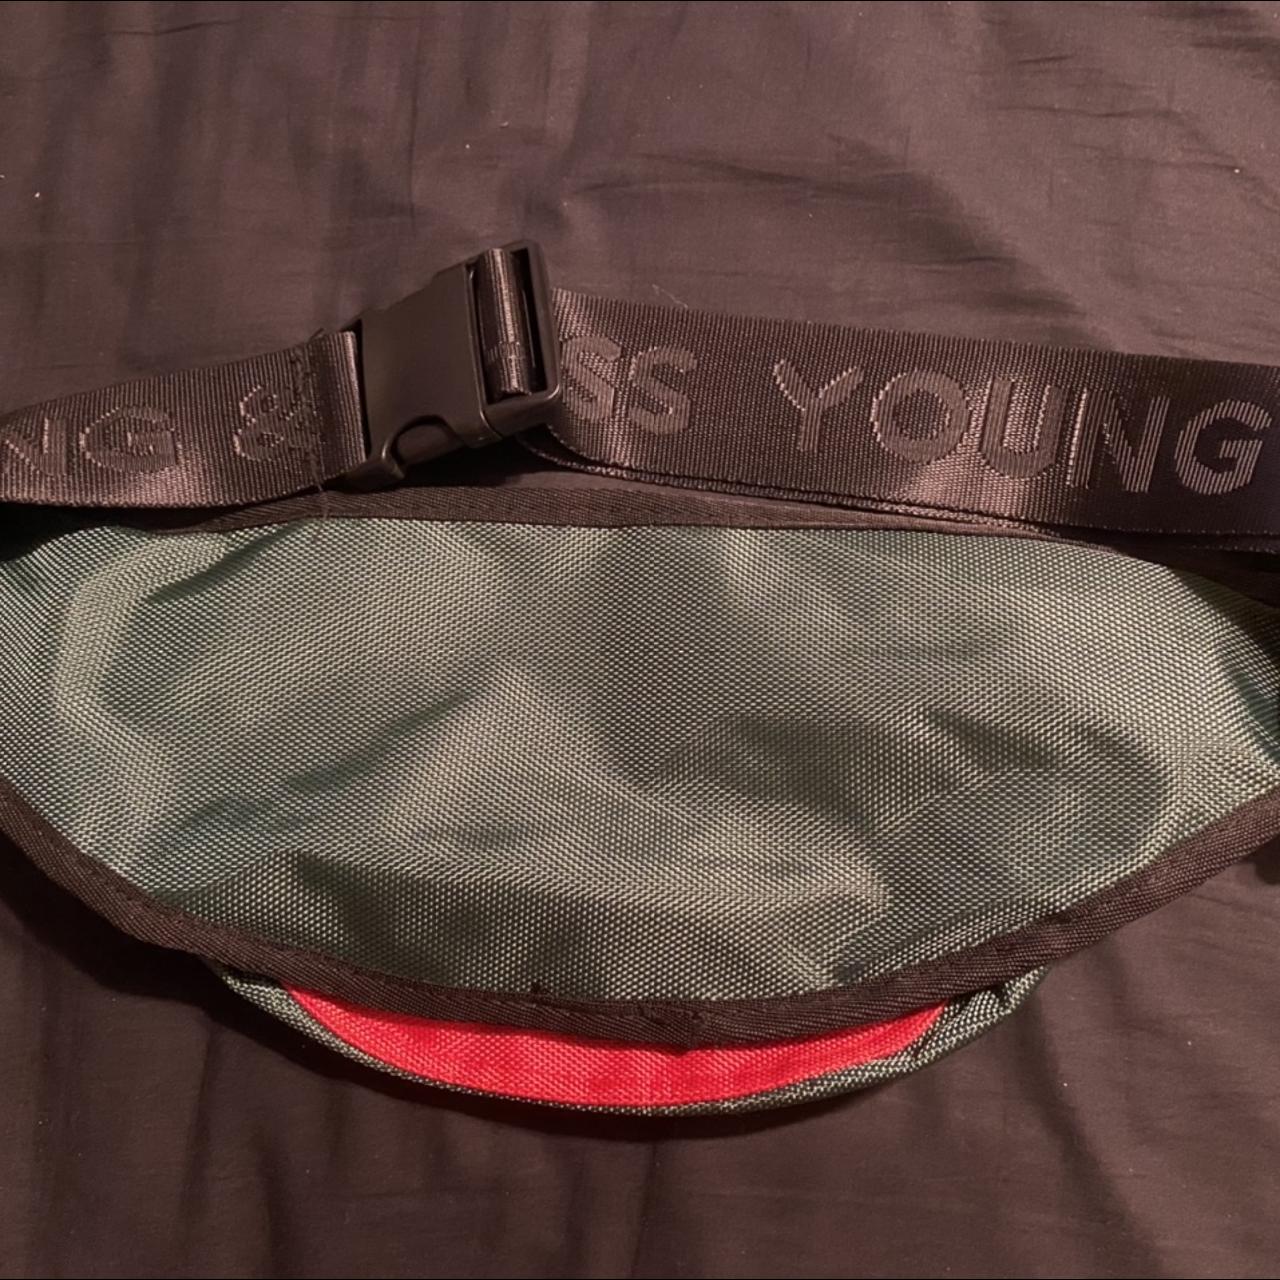 Red MCM belt bag/Fanny pack. Asking $400 OBO - Depop